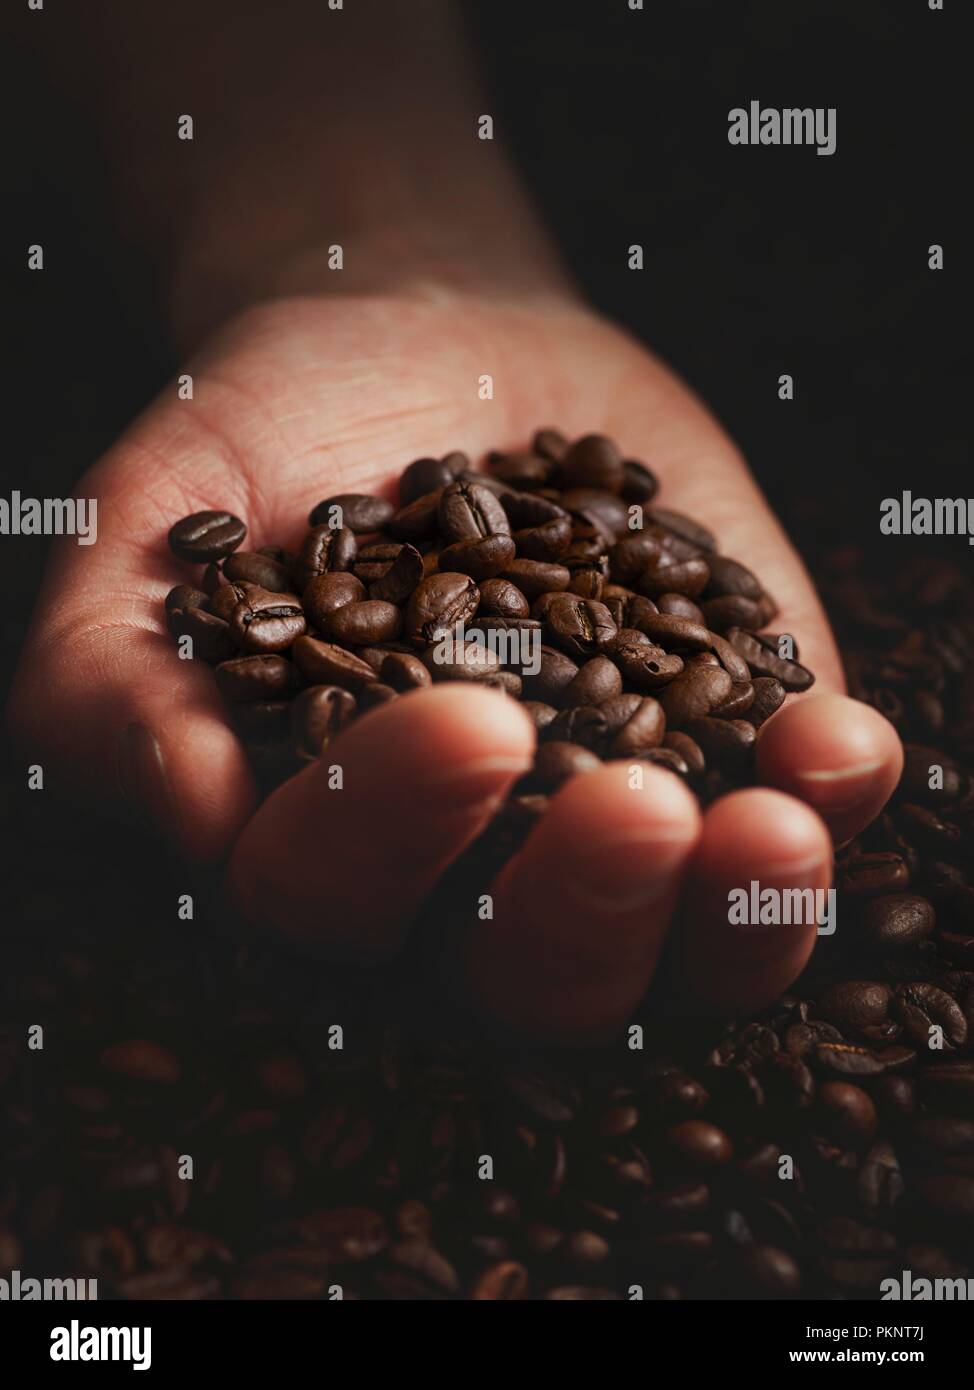 Personne à main pleine de grains de café. Banque D'Images